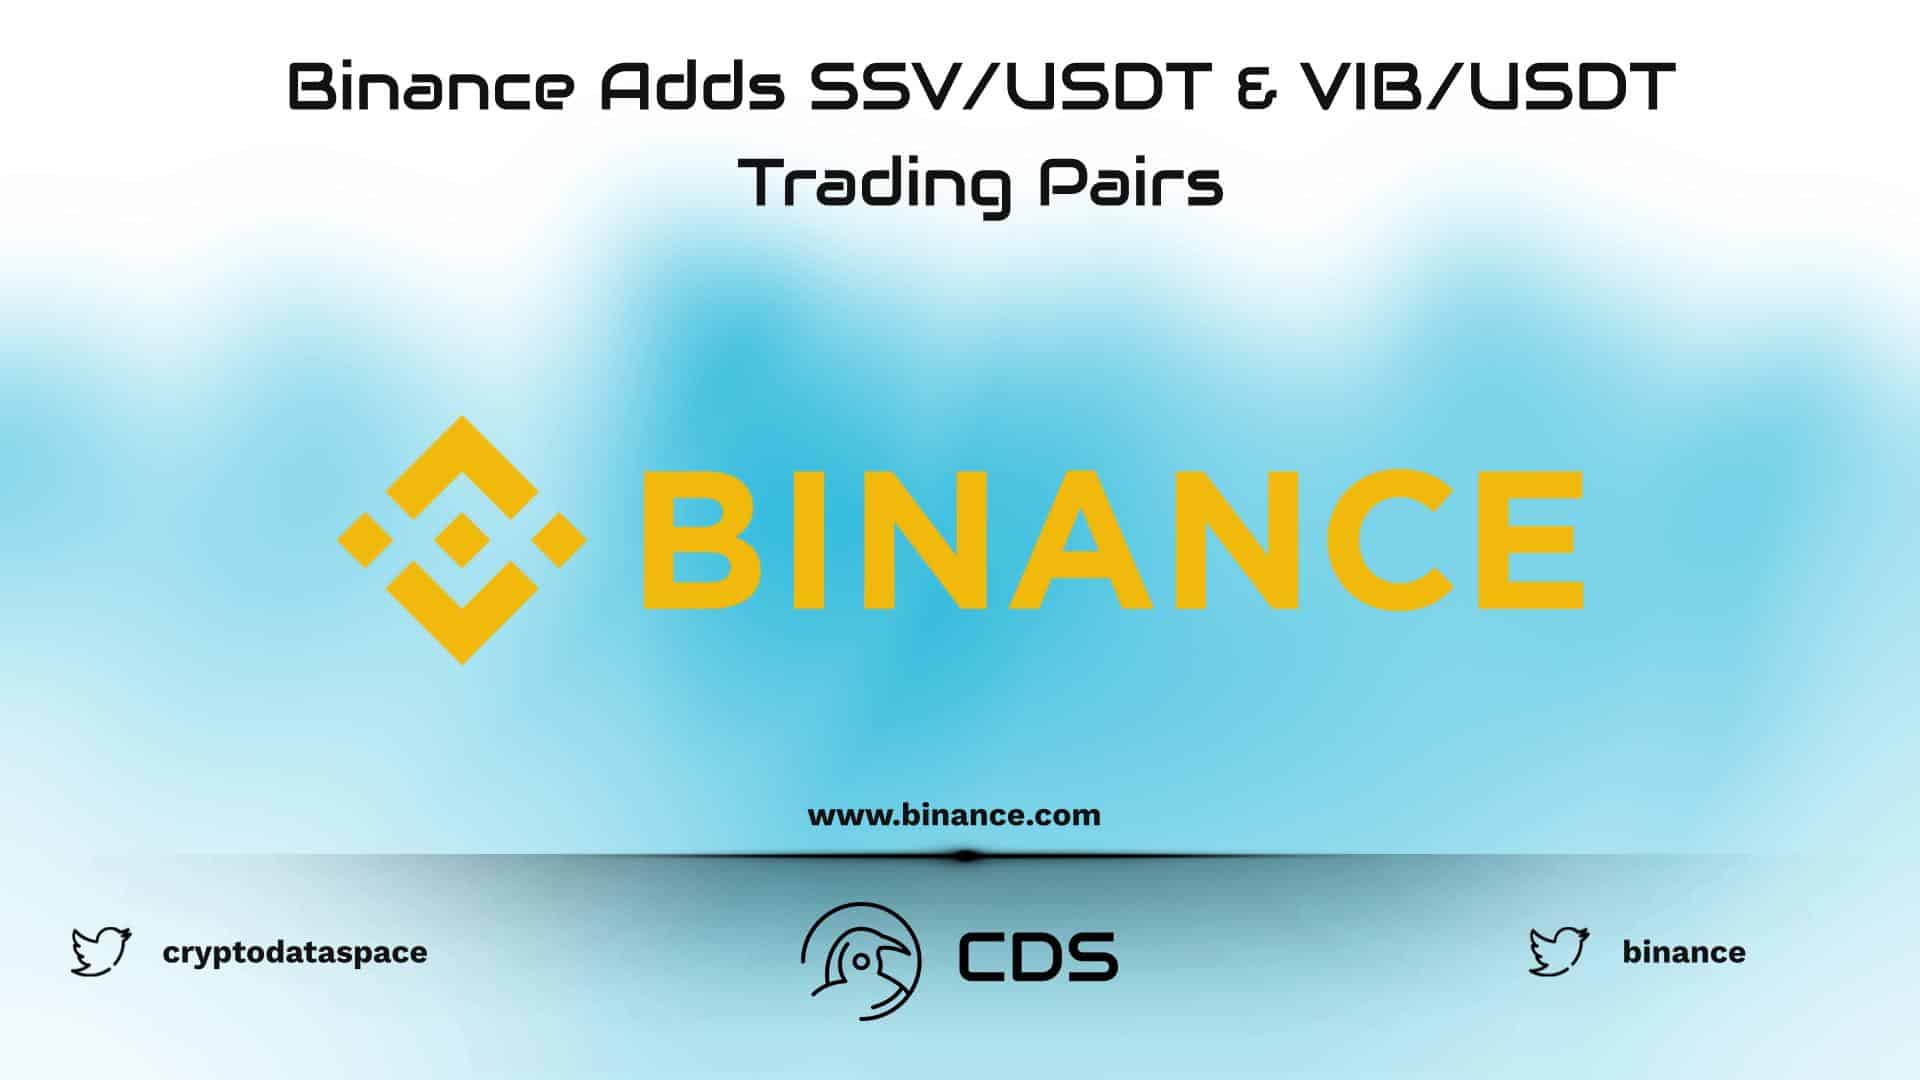 Binance Adds SSV/USDT & VIB/USDT Trading Pairs